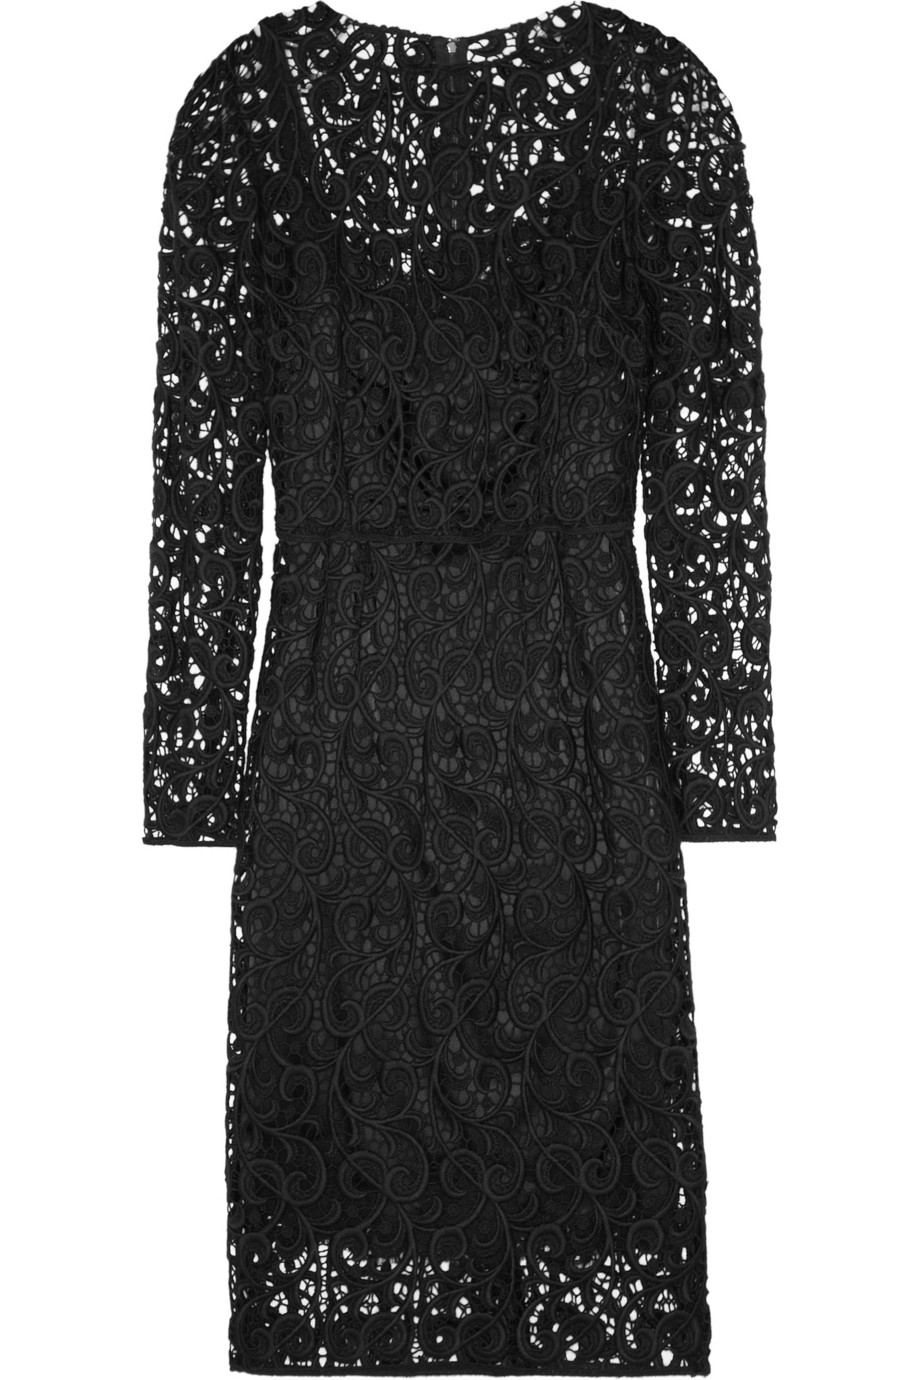 Lyst - Dolce & gabbana Wool Blend Lace Dress in Black